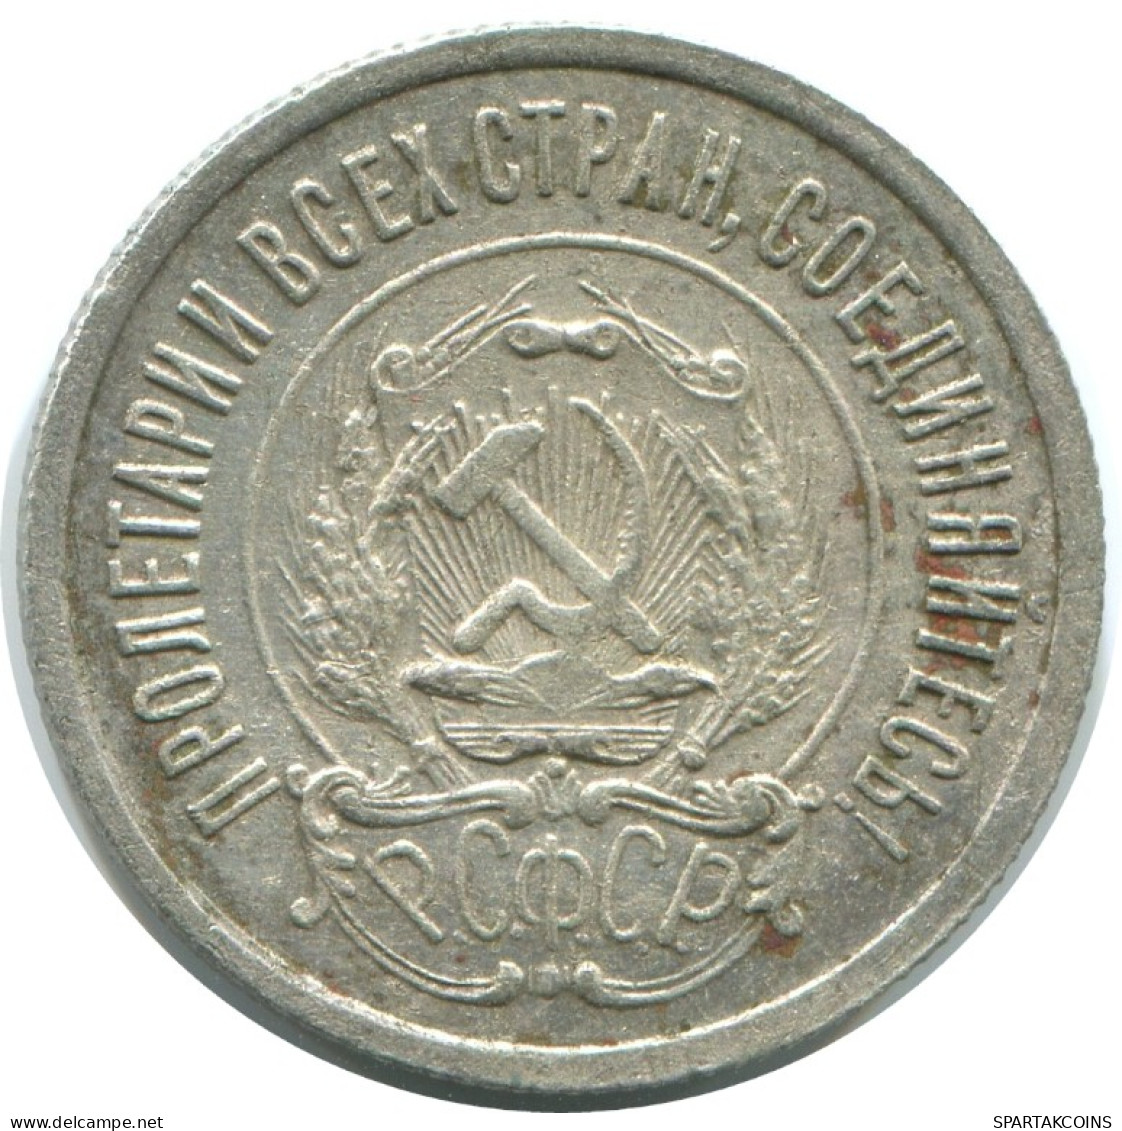 20 KOPEKS 1923 RUSSIA RSFSR SILVER Coin HIGH GRADE #AF392.4.U.A - Rusland